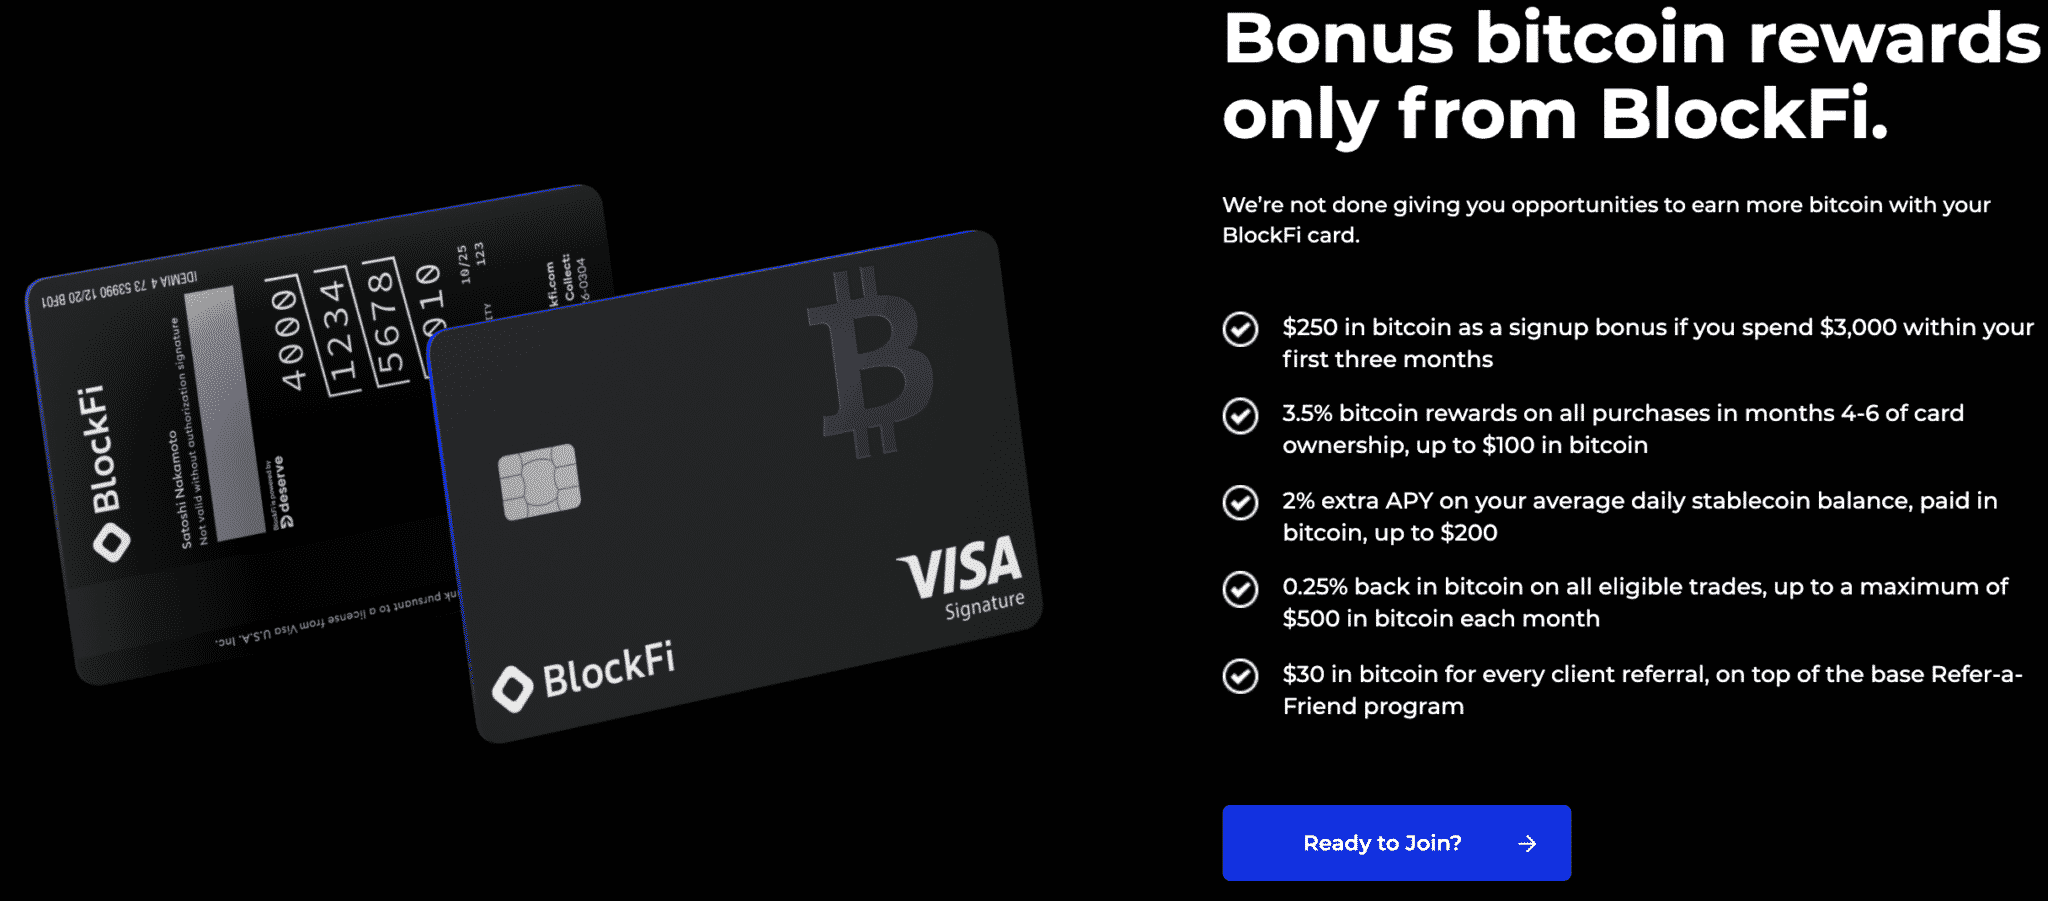 Bonusar från BlockFi: s kreditkortsmålsida